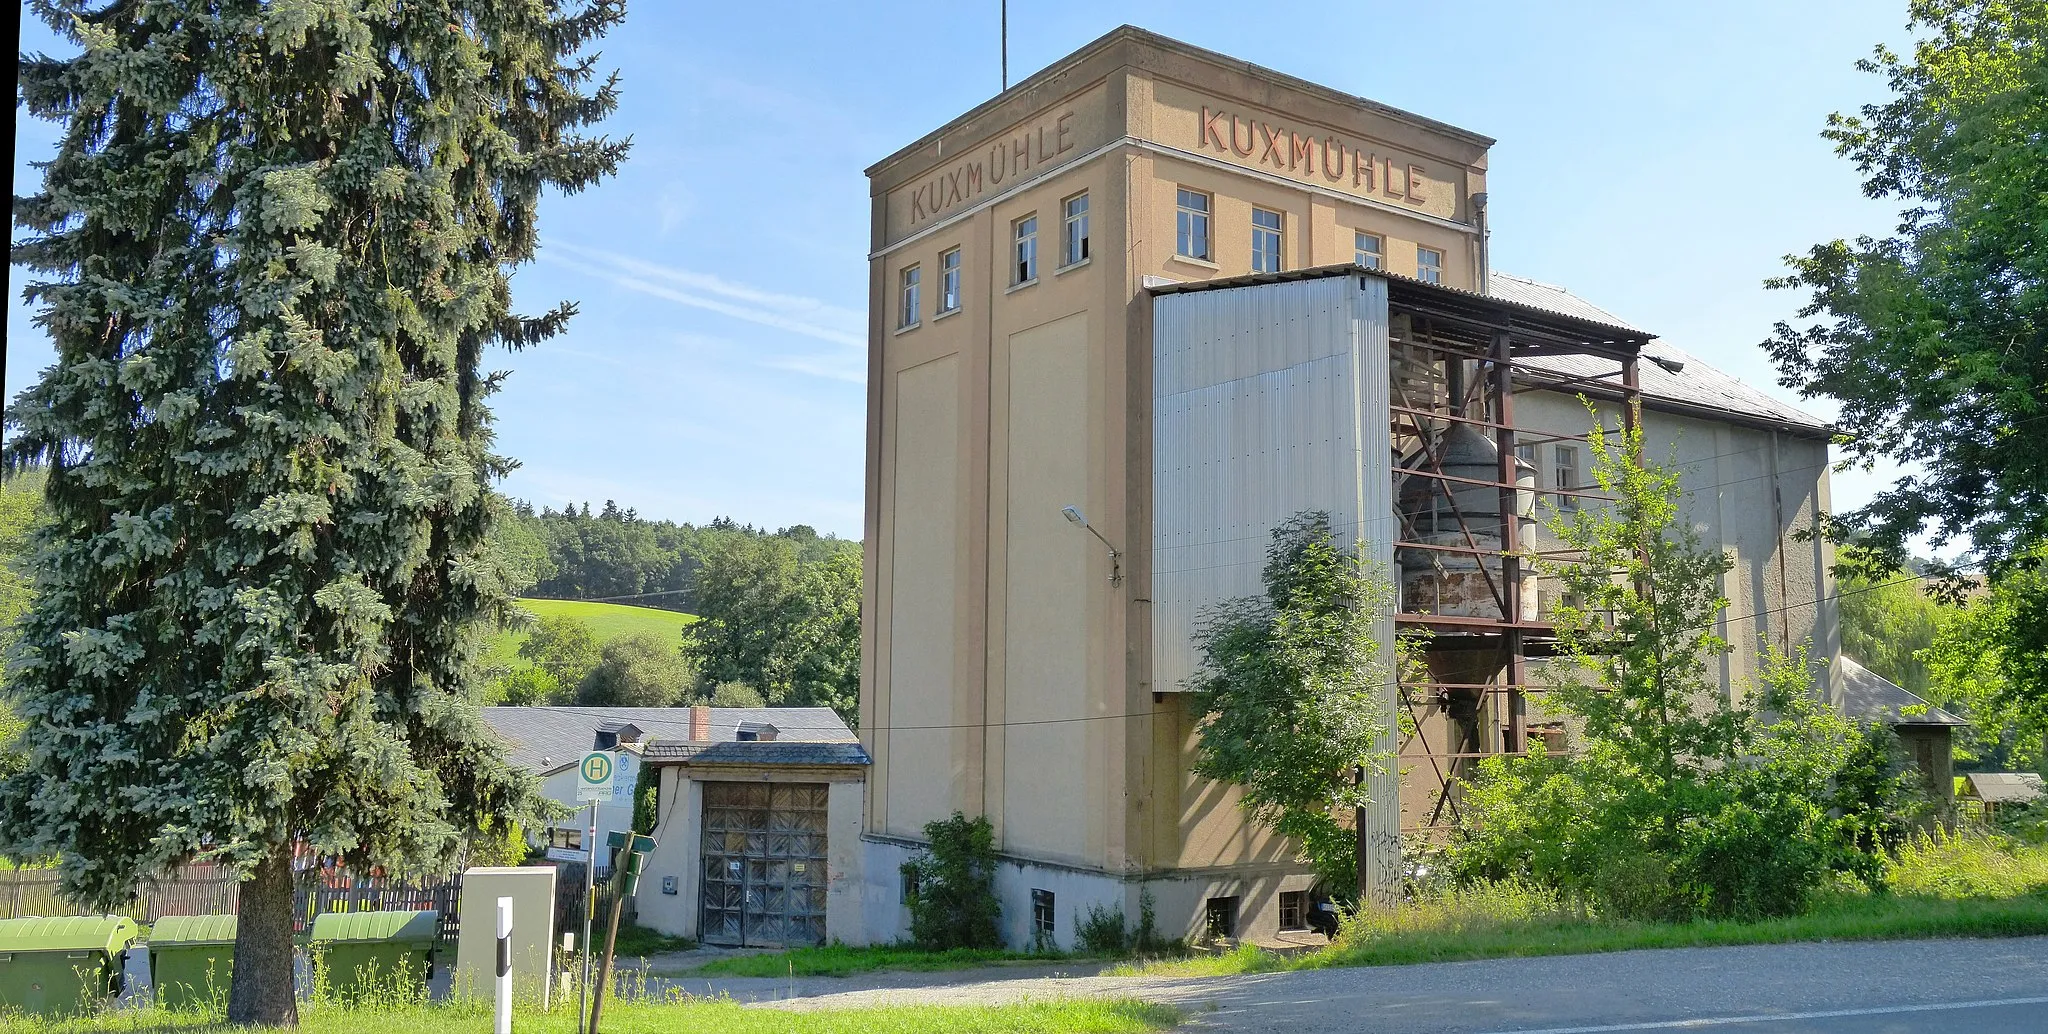 Photo showing: Die ehemalige Kuxmühle